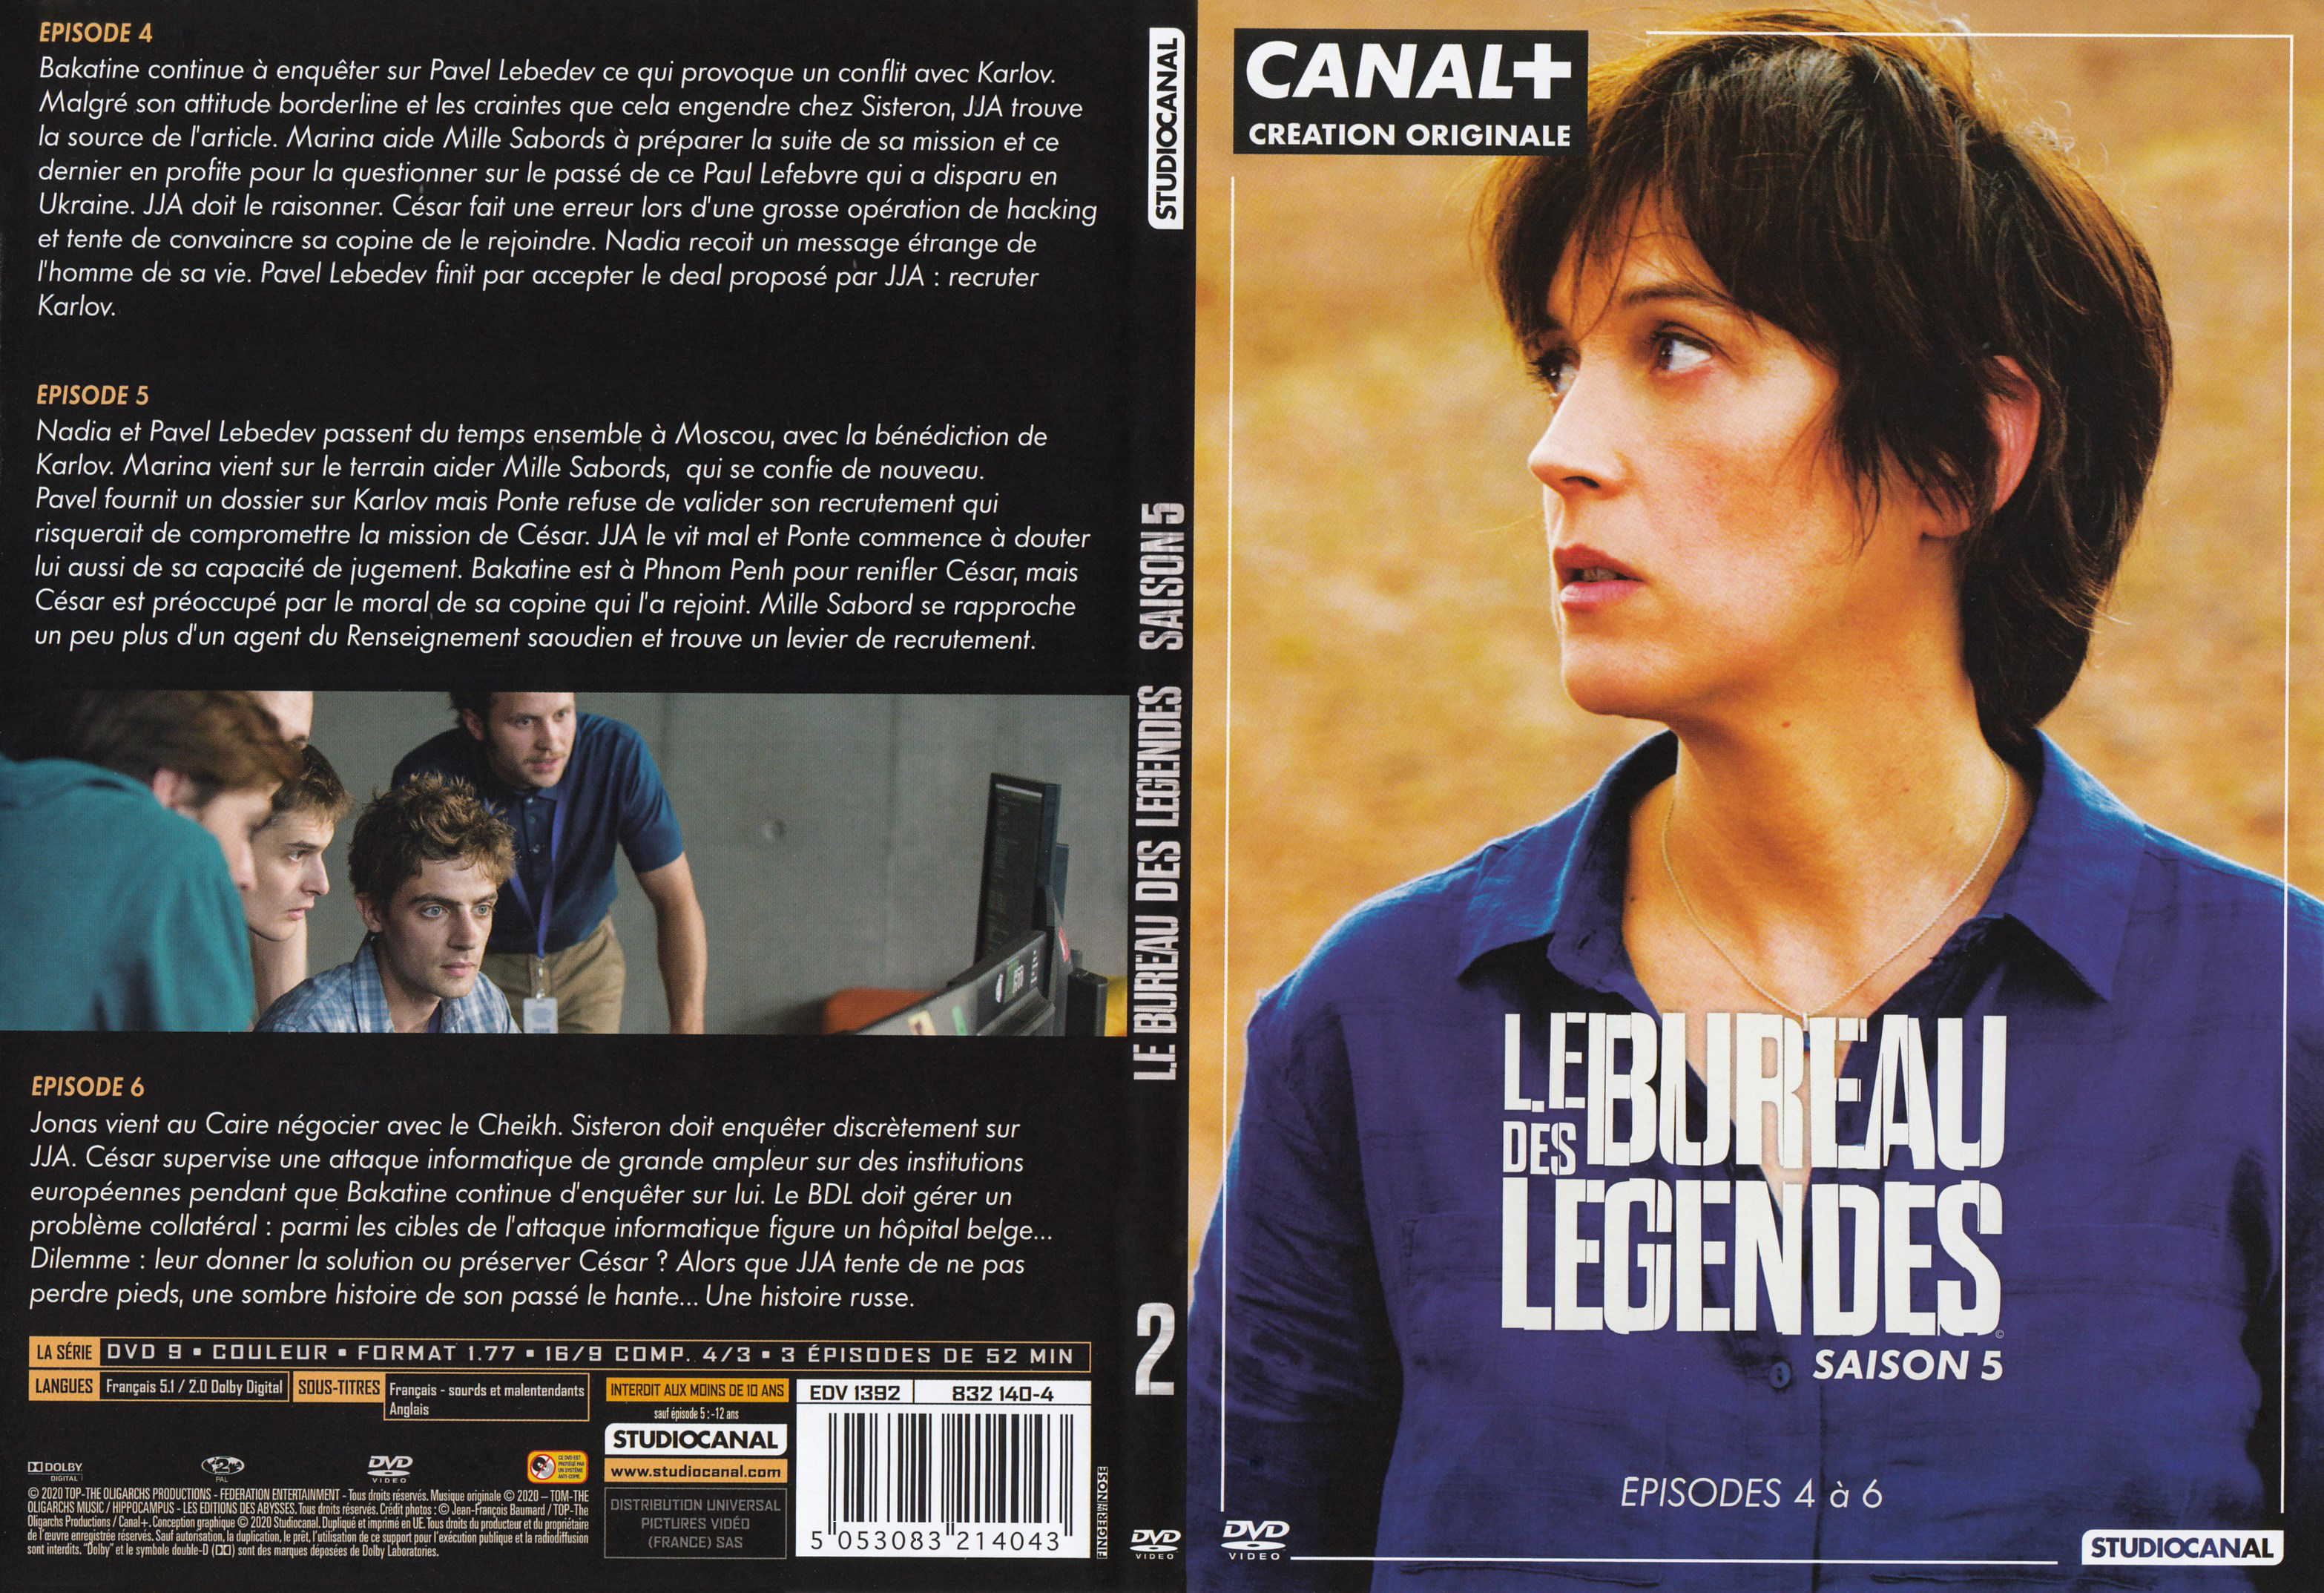 Jaquette DVD Le Bureau des lgendes Saison 5 DVD 2